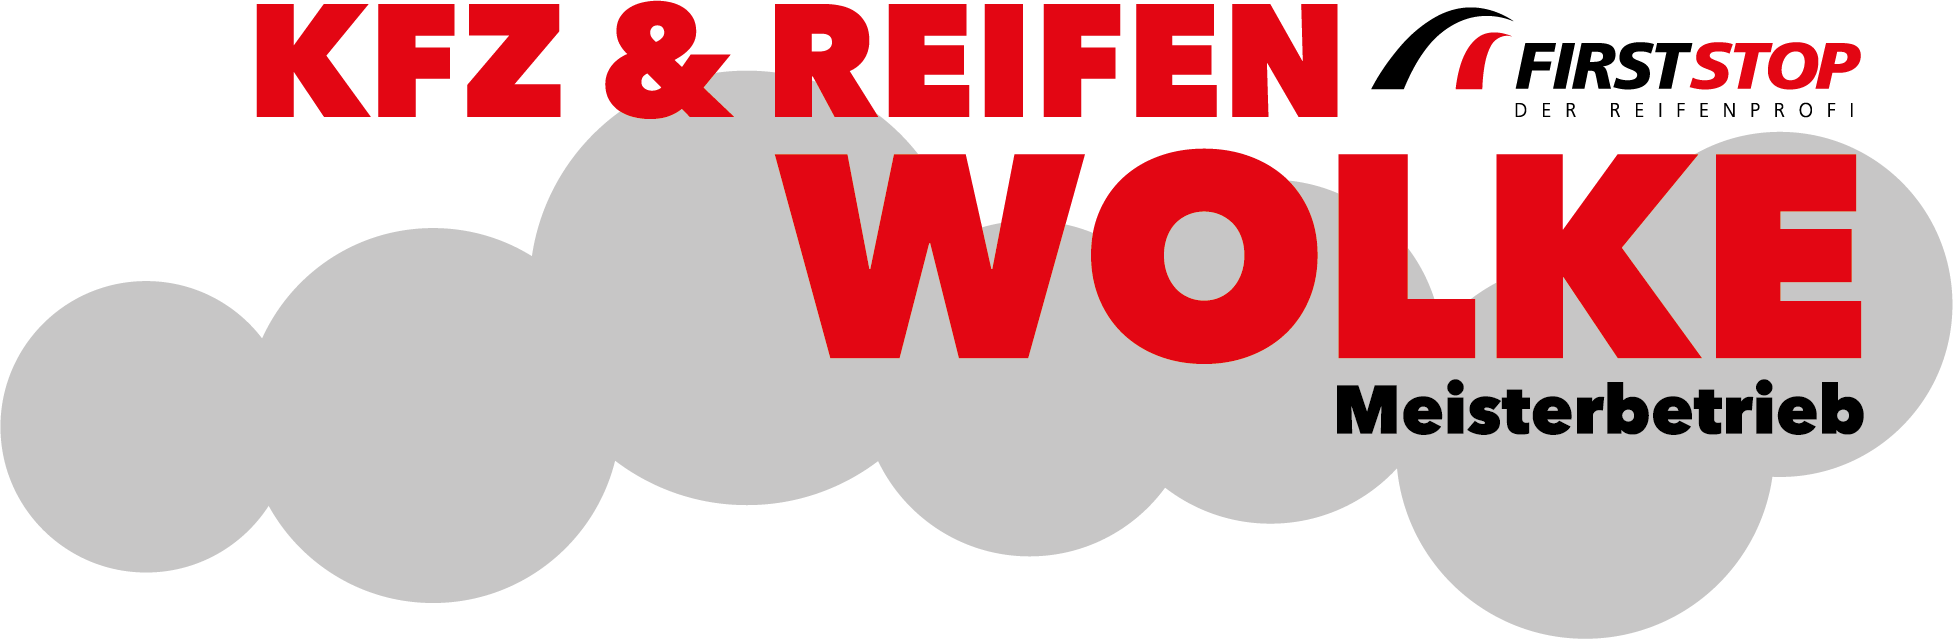 Kfz und Reifen Wolke GmbH & Co. KG